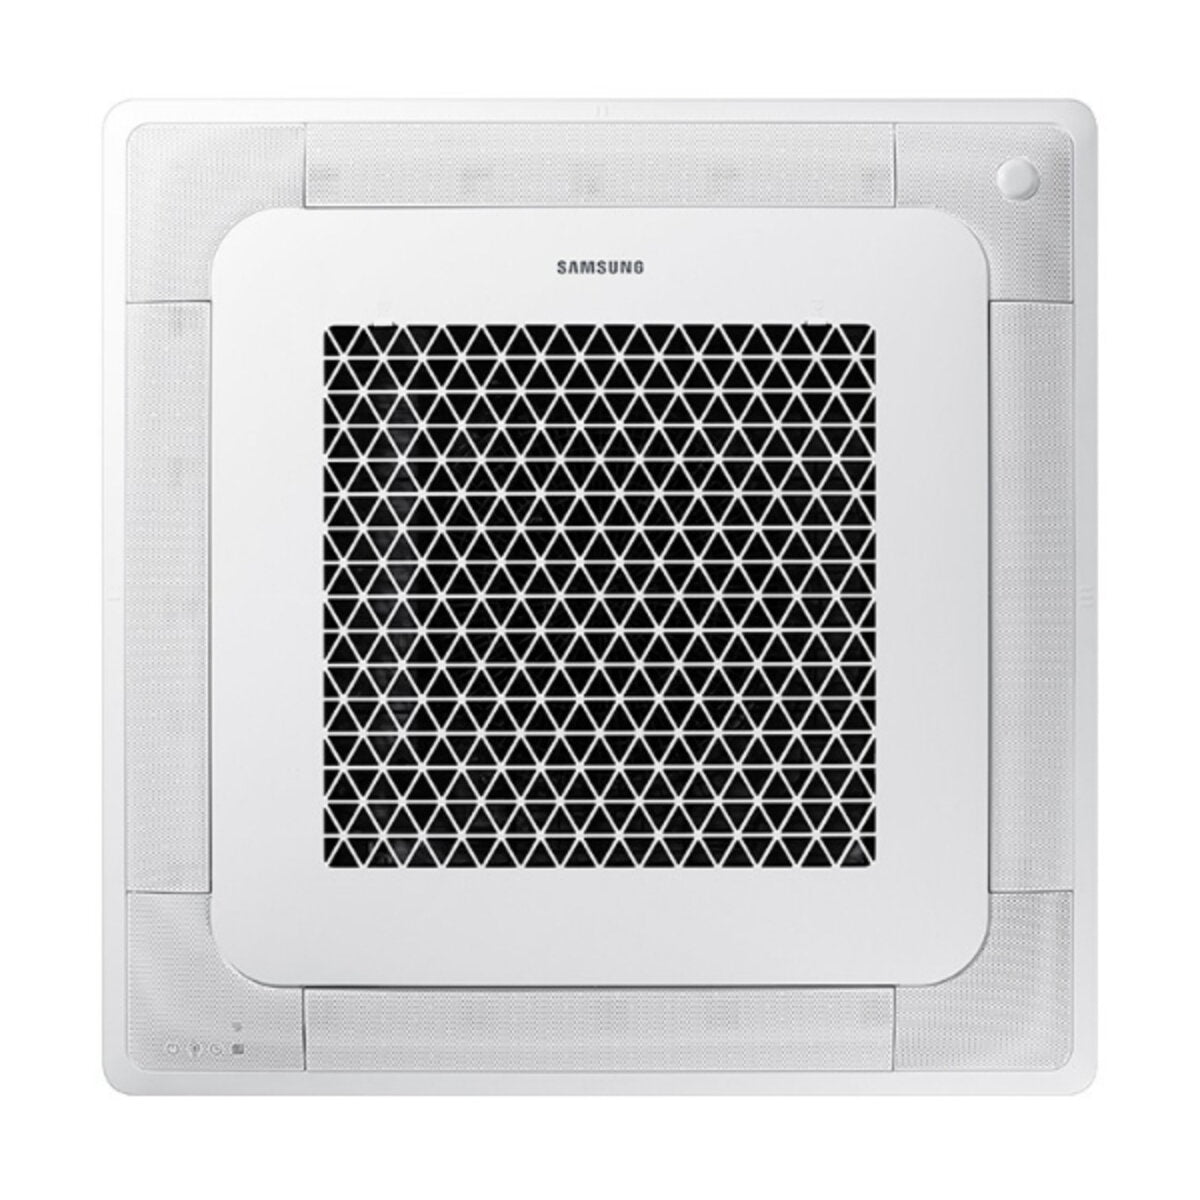 Samsung Air conditioner Windfree 4-way trial split 7000 + 12000 + 12000 BTU inverter A ++ outdoor unit 6,8 kW